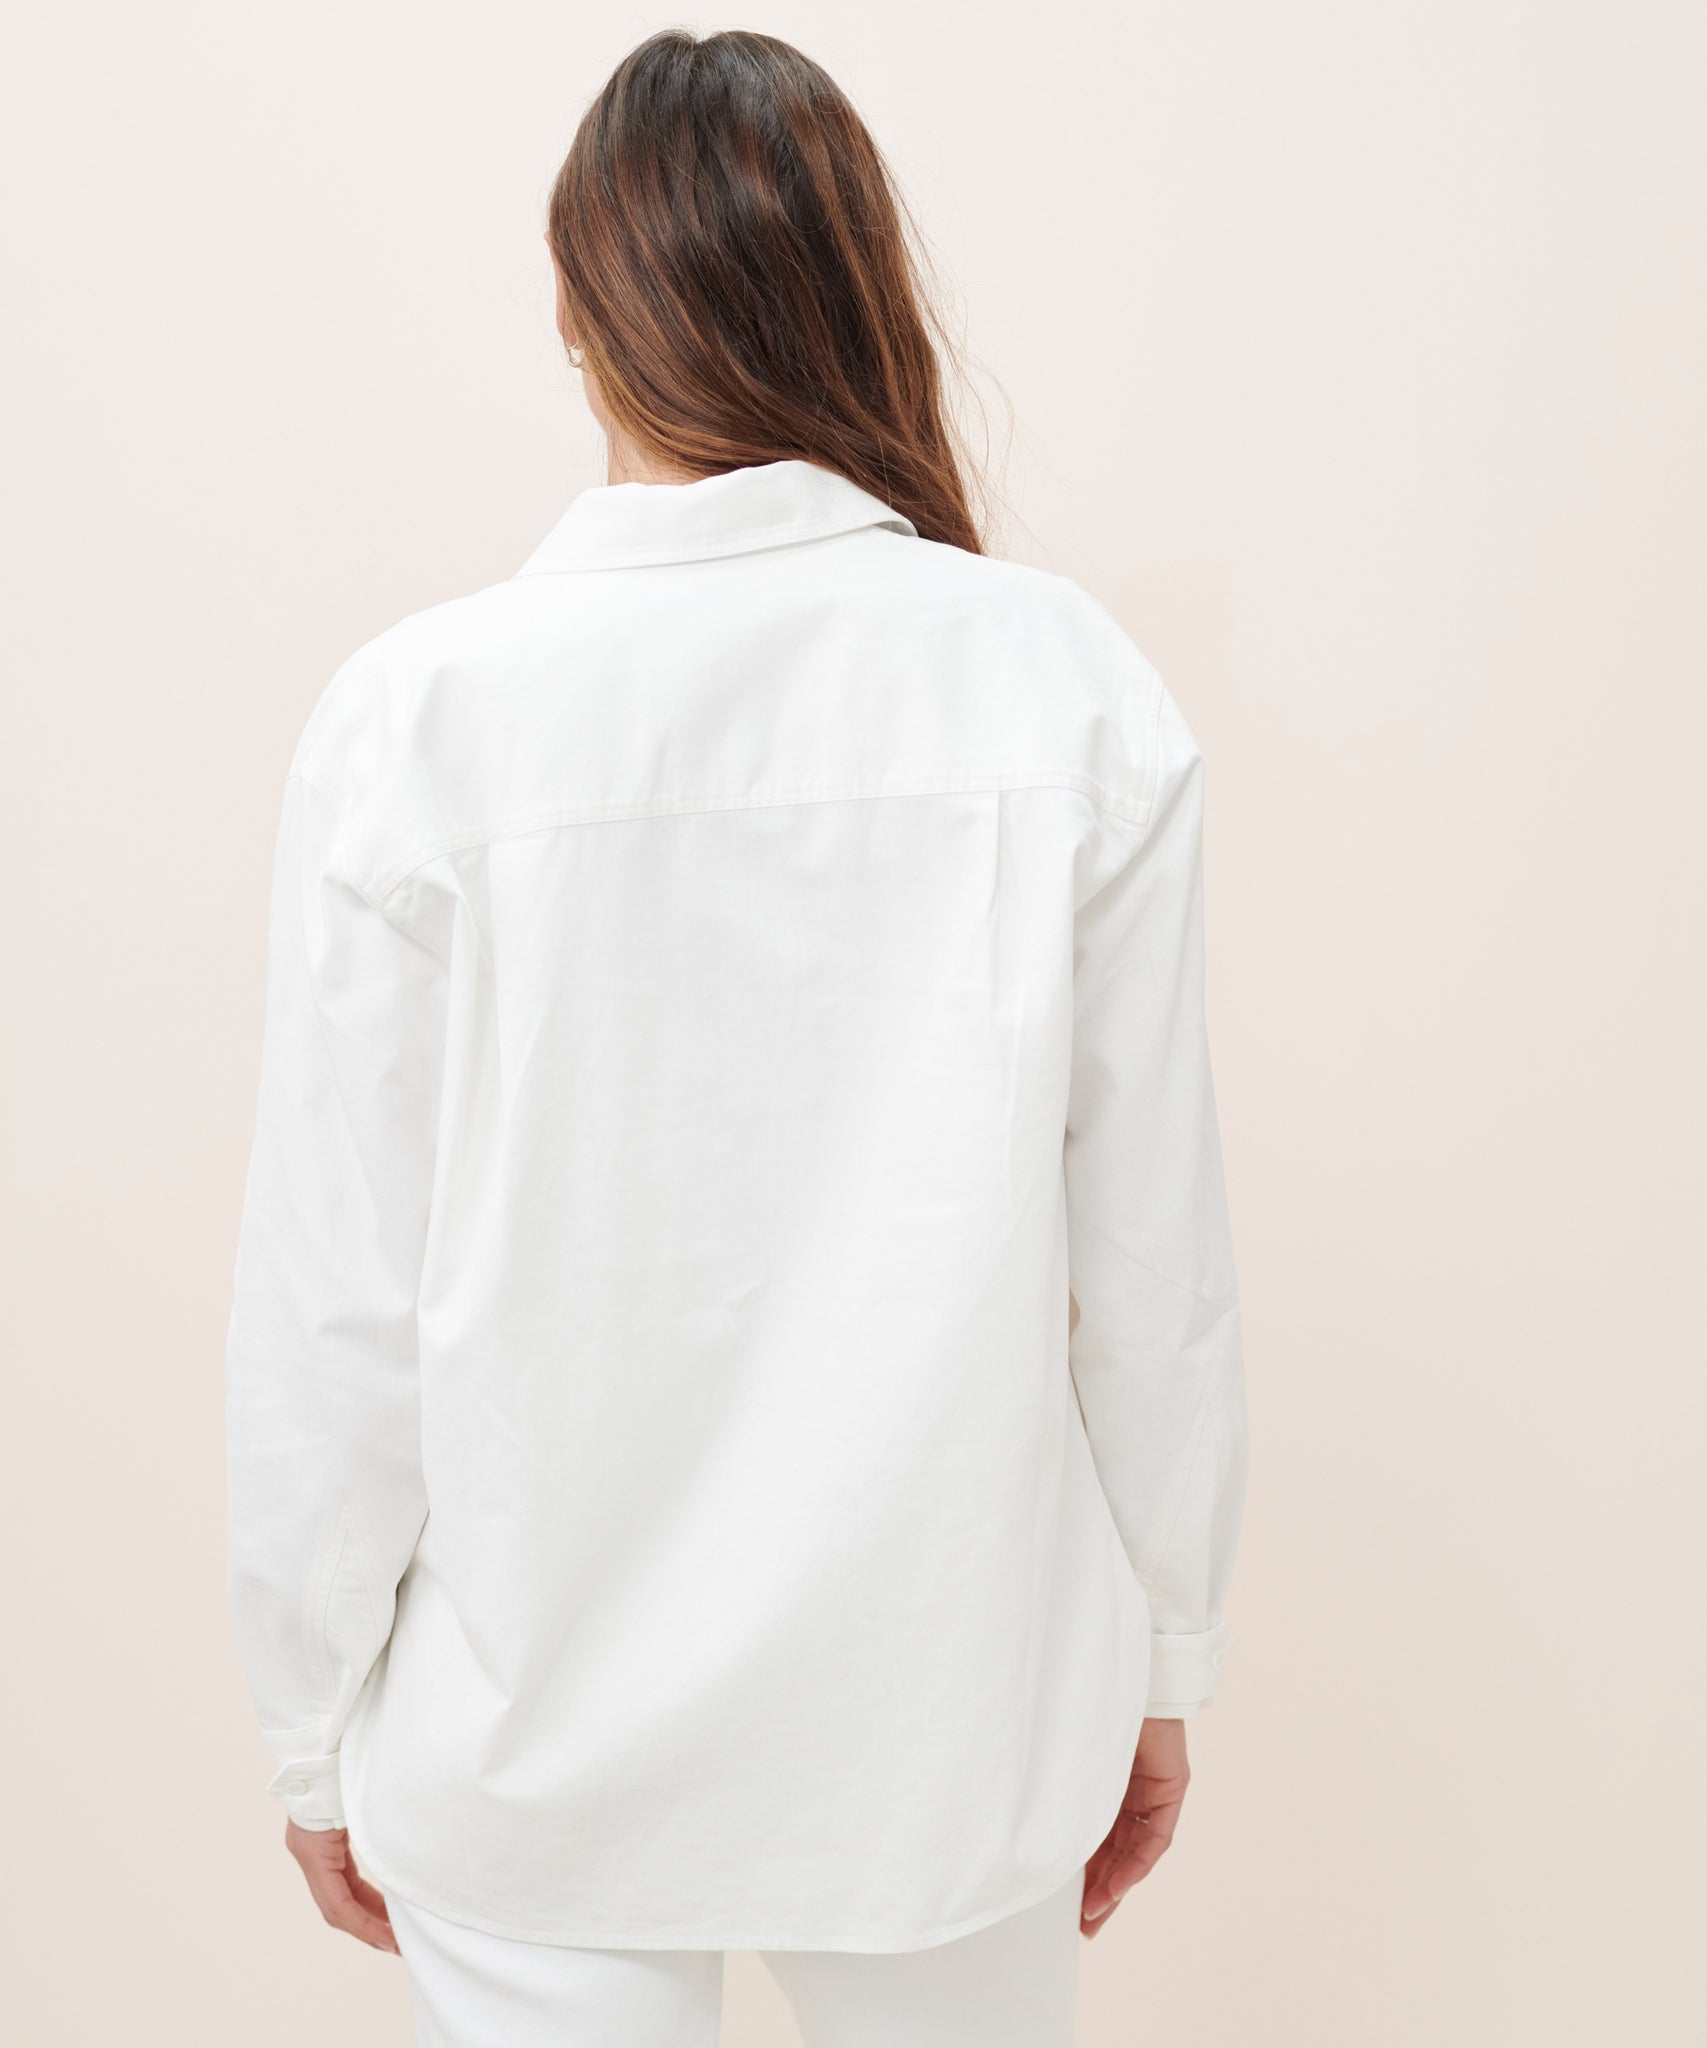 O'Keeffe Shirt – Jenni Kayne